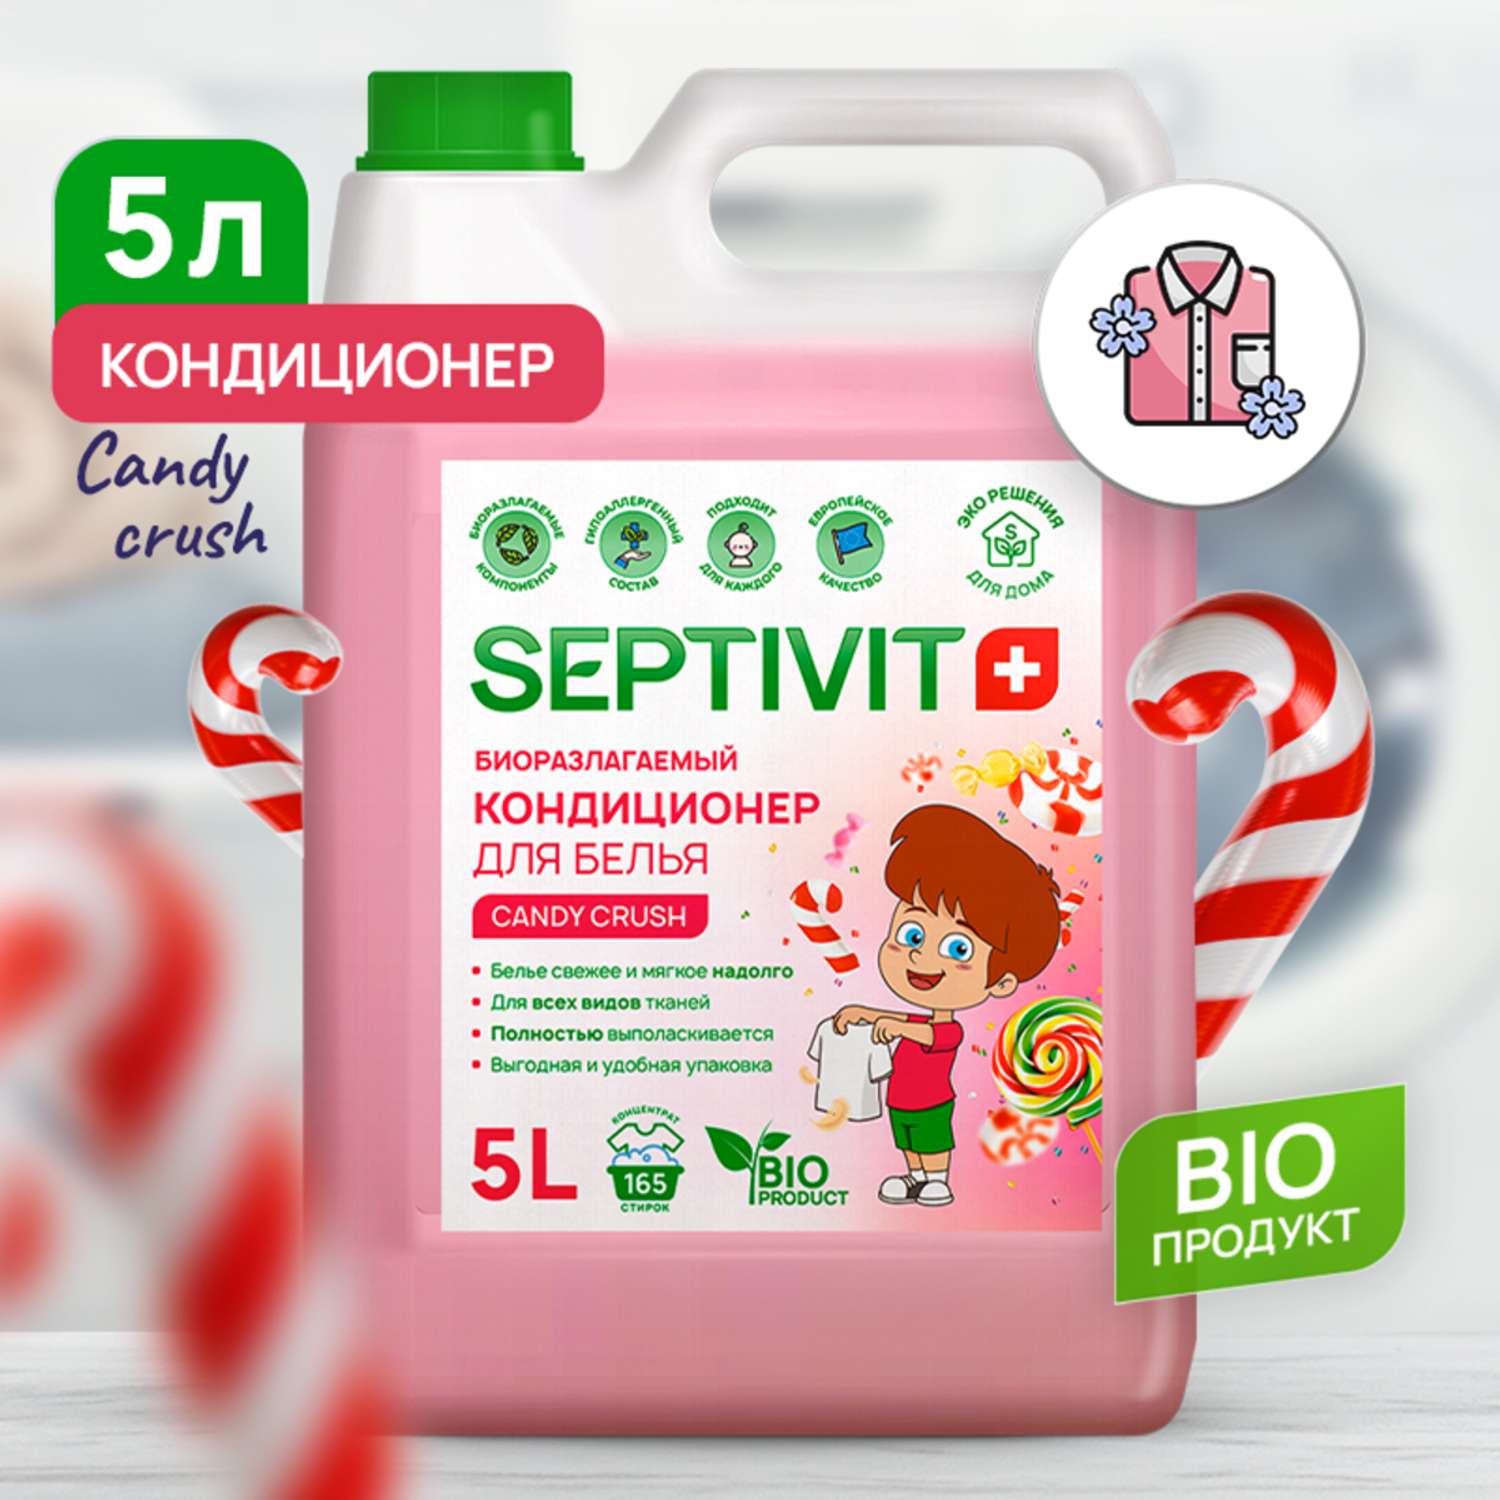 Кондиционер для белья SEPTIVIT Premium 5л с ароматом Candy crush - фото 2